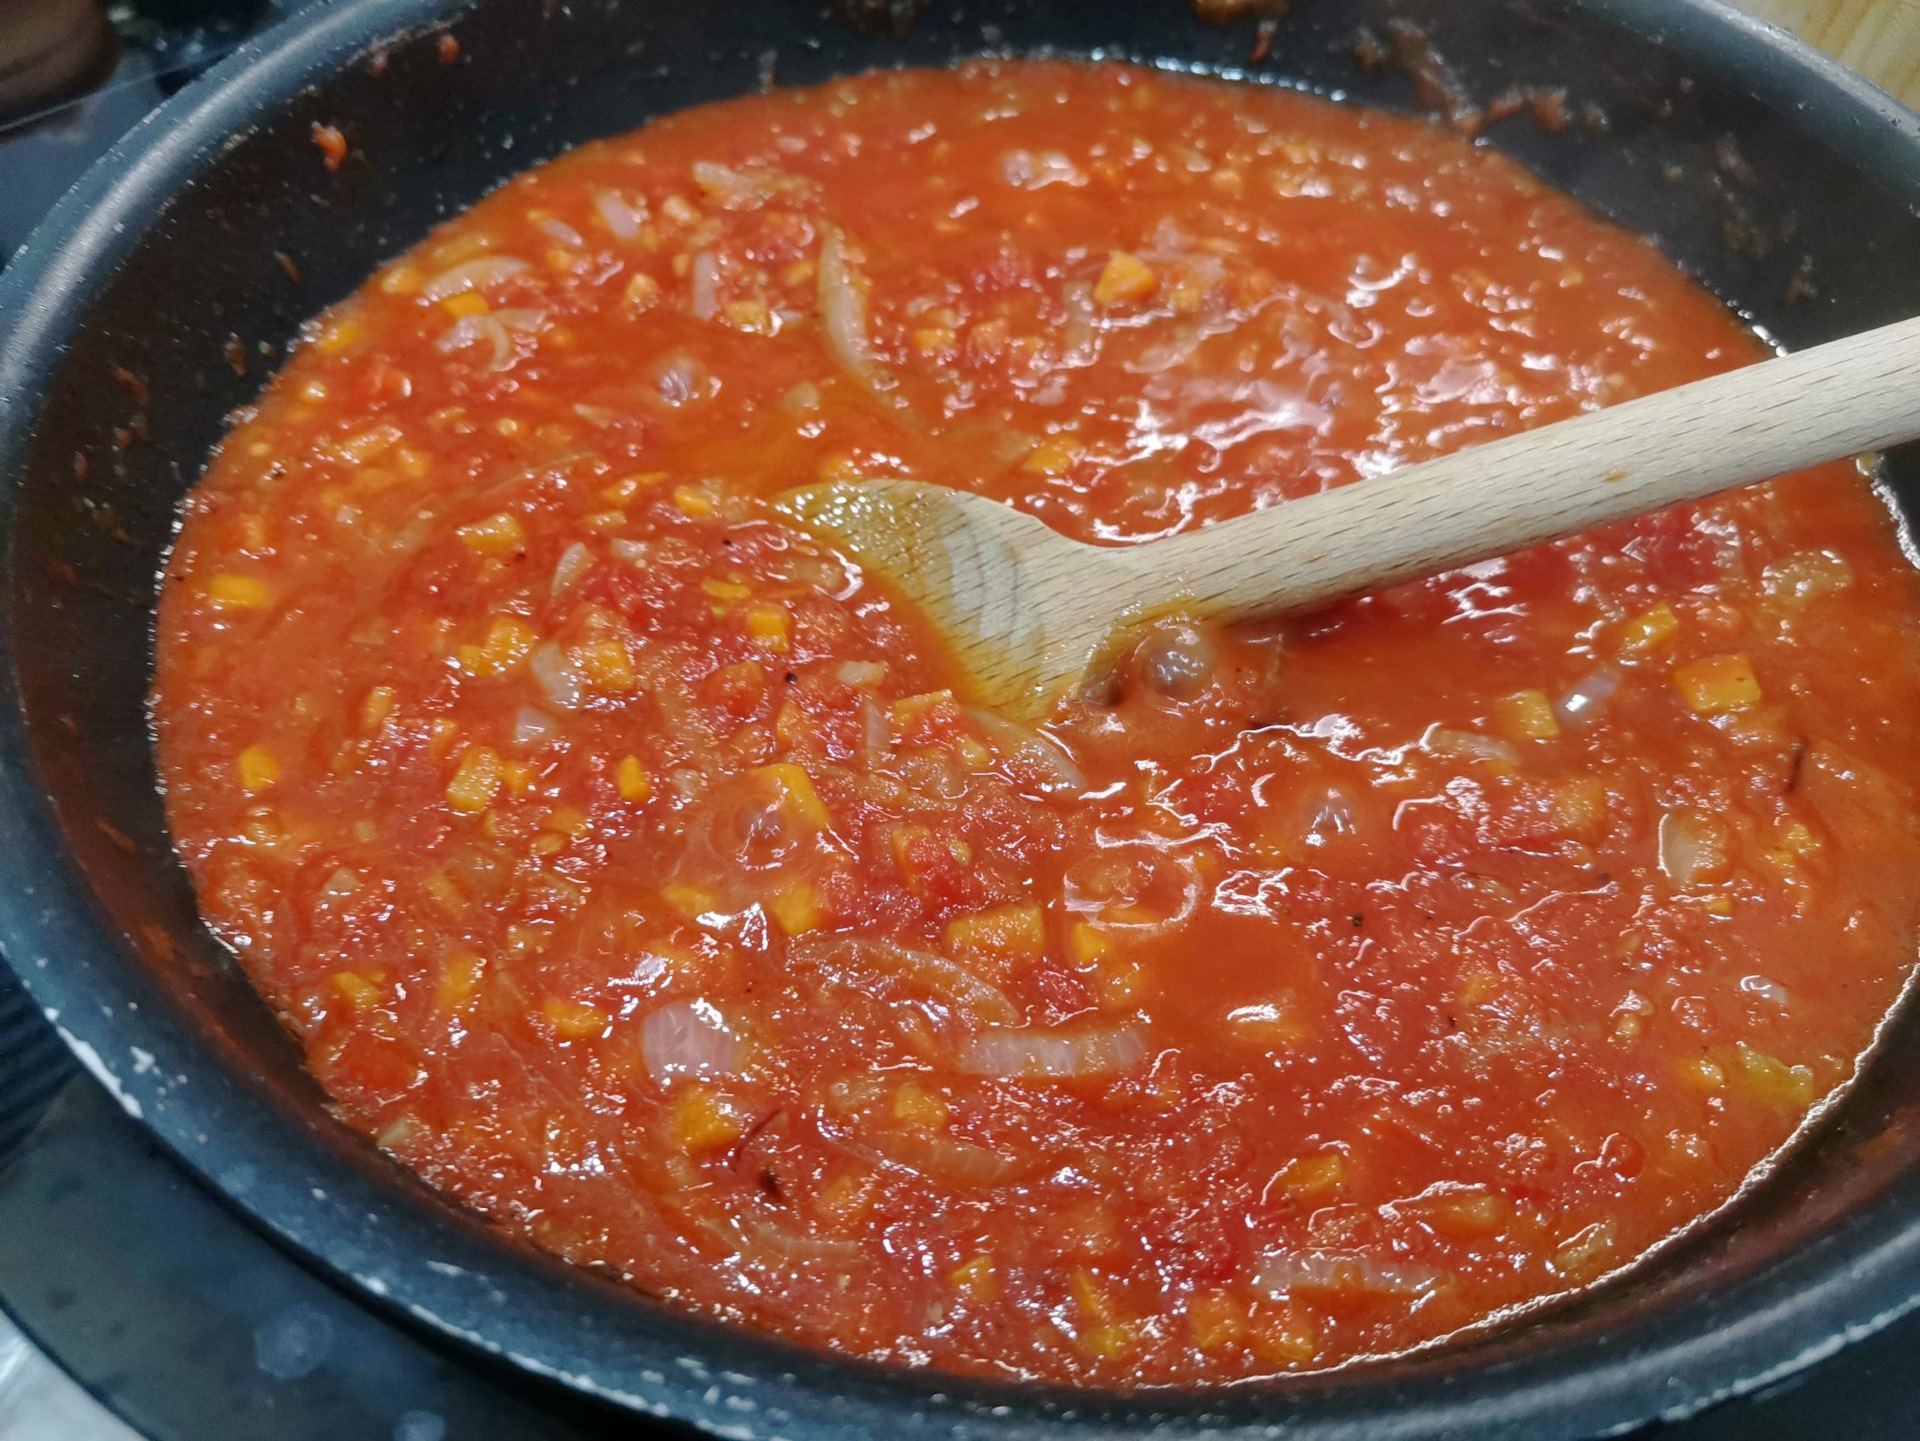 Лосось в томатном соусе консервы рецепт